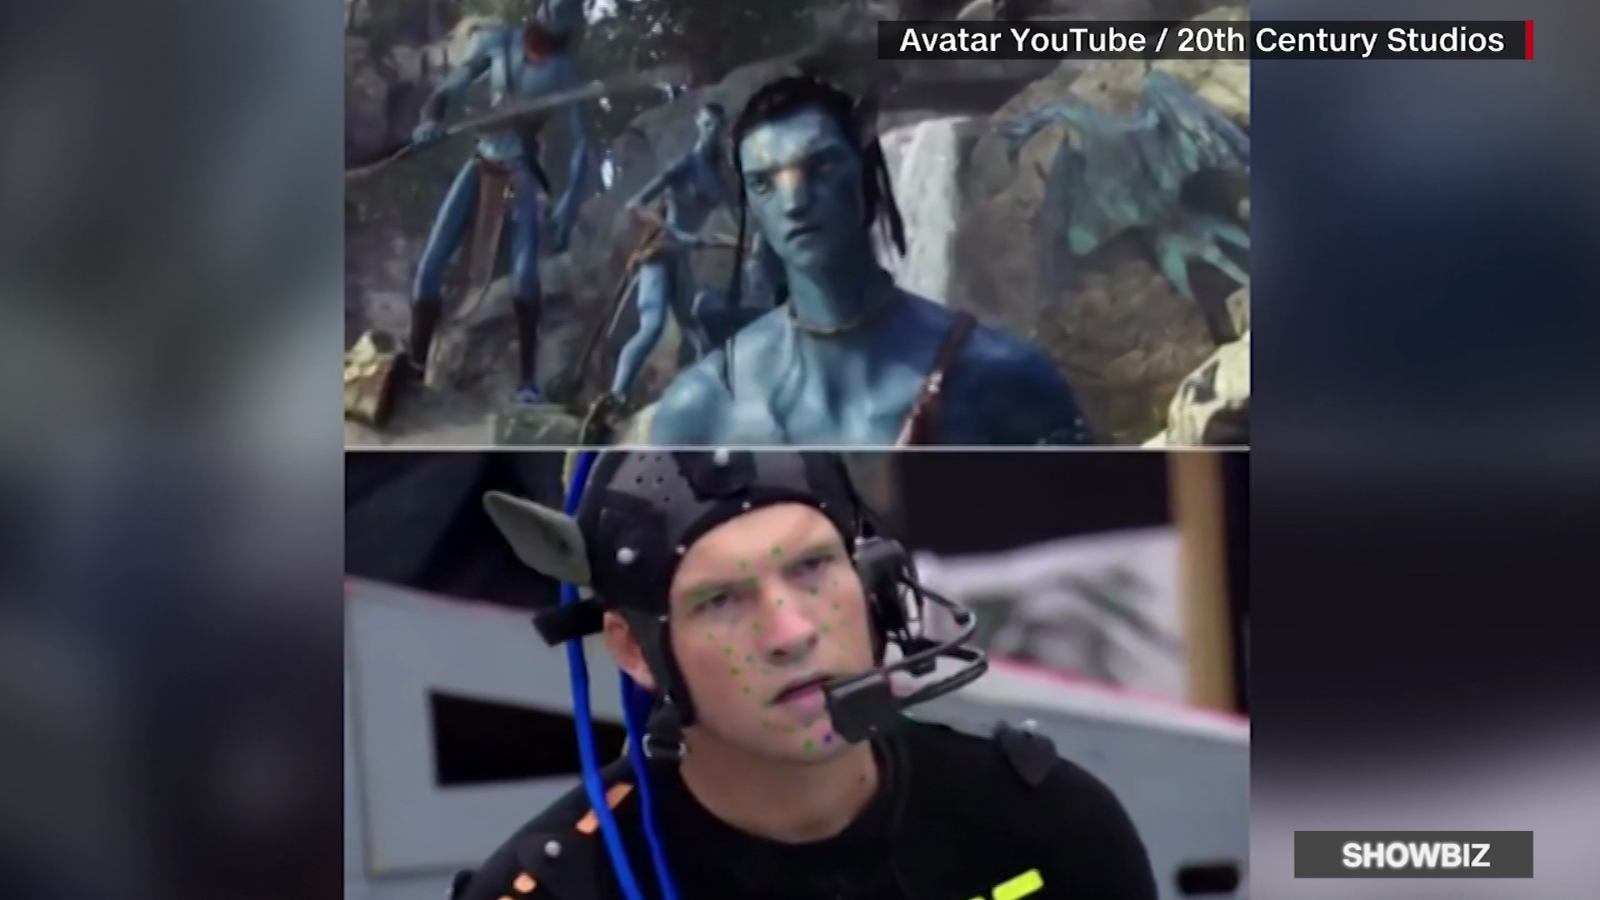 Avatar 2 detrás de cámaras: Là người hâm mộ của bộ phim bom tấn này, bạn chắc chắn không muốn bỏ lỡ những câu chuyện hậu trường thú vị phải không? Cùng khám phá những bí mật và hình ảnh độc quyền về quá trình làm phim của đội ngũ sản xuất và diễn viên.